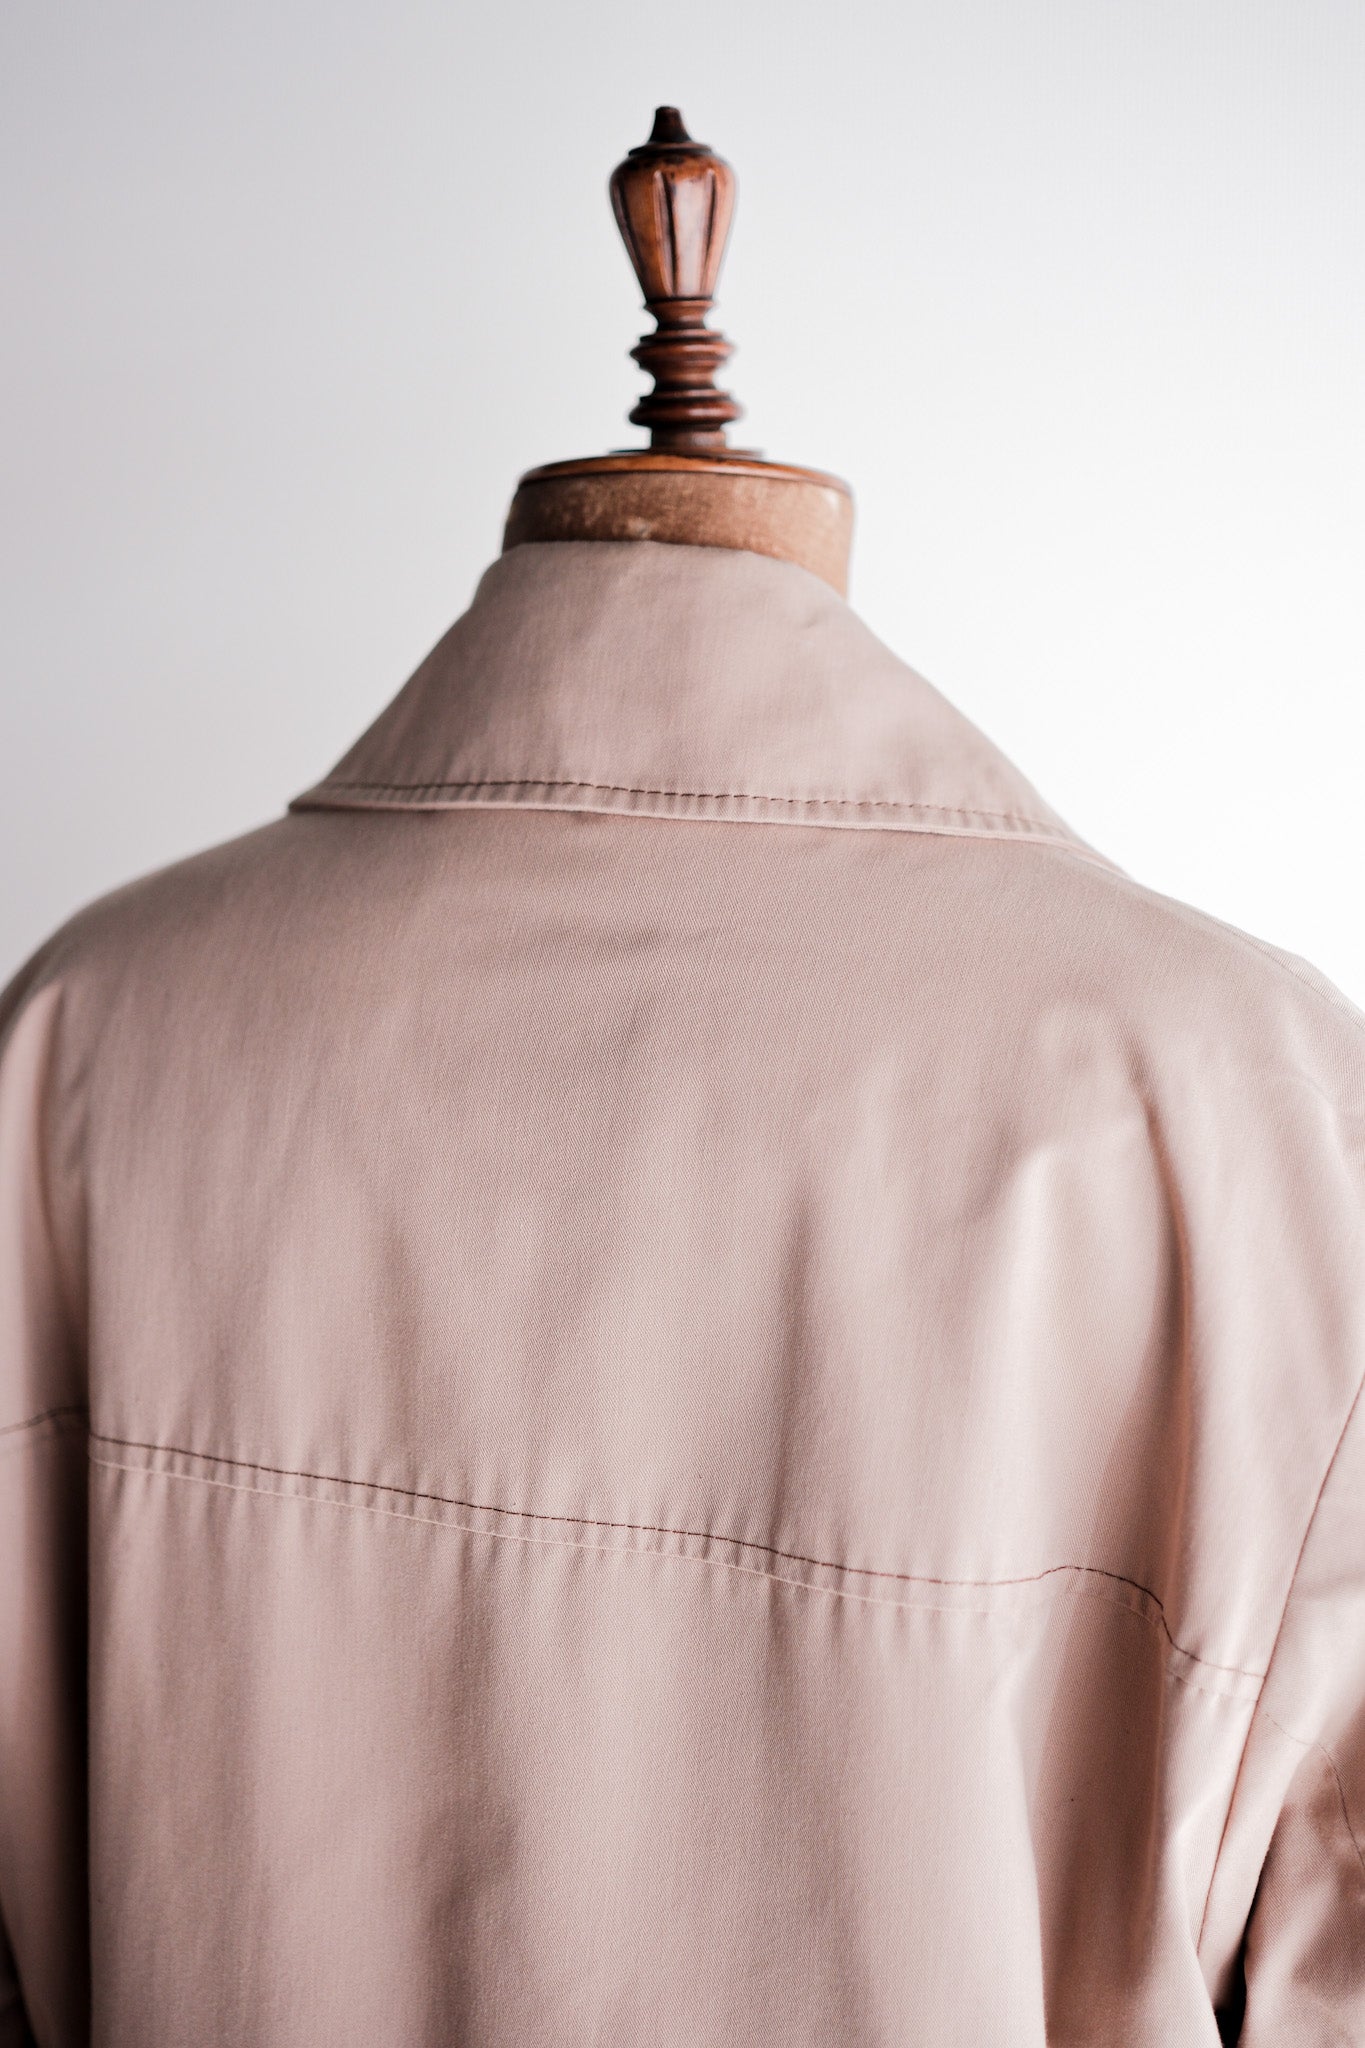 [〜80年代]復古Grenfell戶外夾克尺寸。40“ JC.Cordings＆Co.ltd”